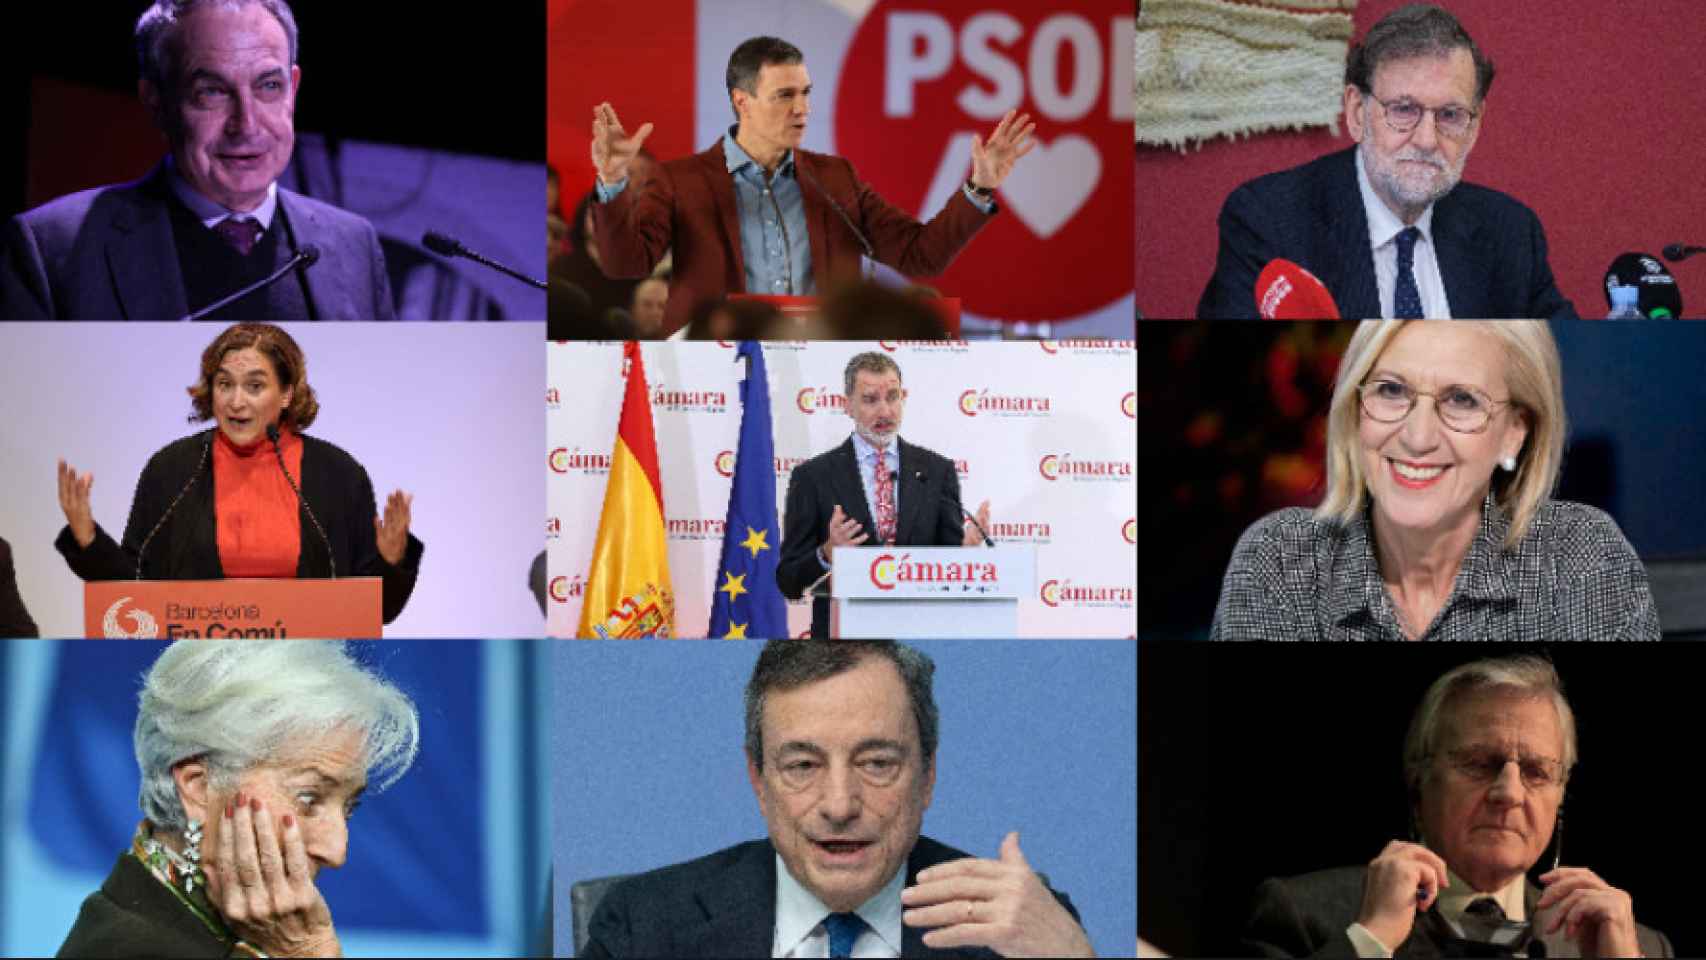 José Luis Rodríguez Zapatero, Pedro Sánchez, Mariano Rajoy, Ada Colau, Felipe VI, Rosa Díez, Christine Lagarde, Mario Draghi y Jean Claude Trichet.